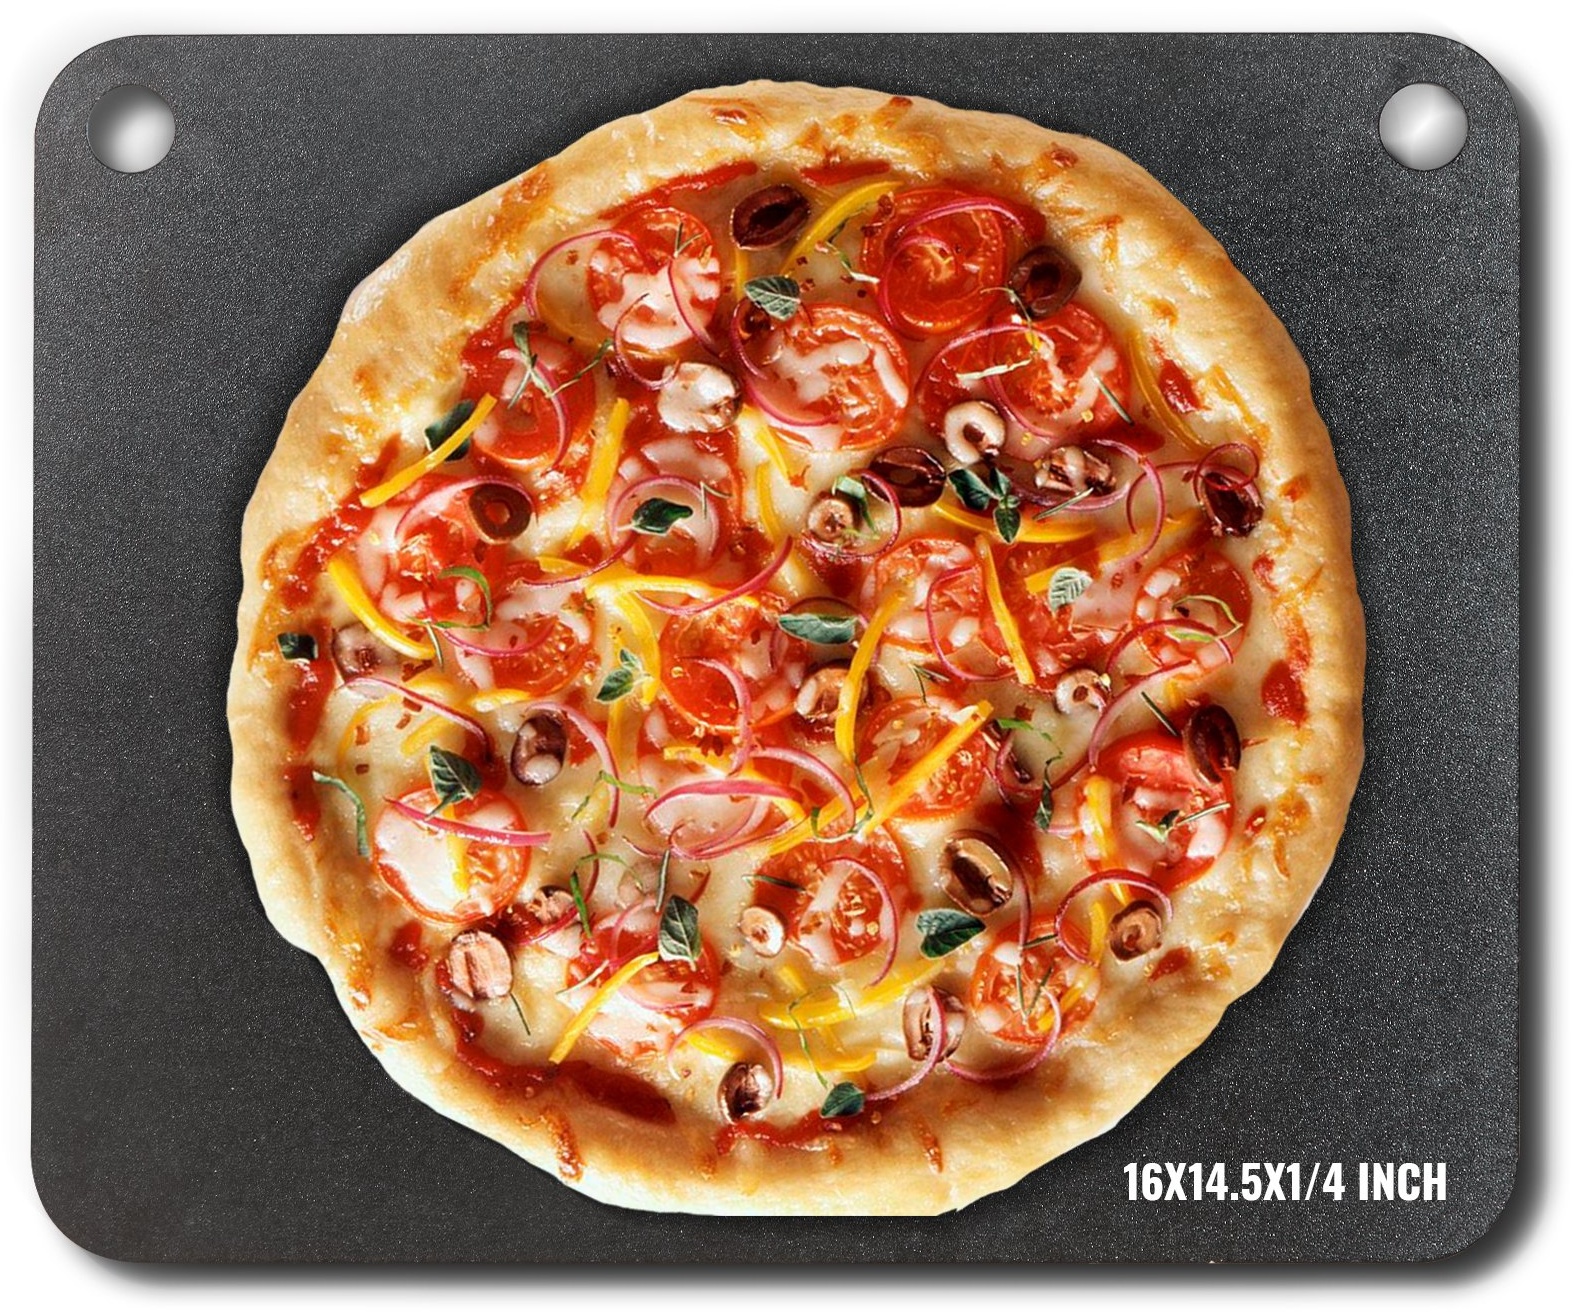 VEVOR Pizzastahl, 16" x 14,5" x 1/4" Pizzastahlplatte für den Ofen, vorgewürzter Pizza-Backstein aus Kohlenstoffstahl mit 20-fach höherer Leitfähigkeit, robuste Pizzapfanne für Außengrill, Innenofen